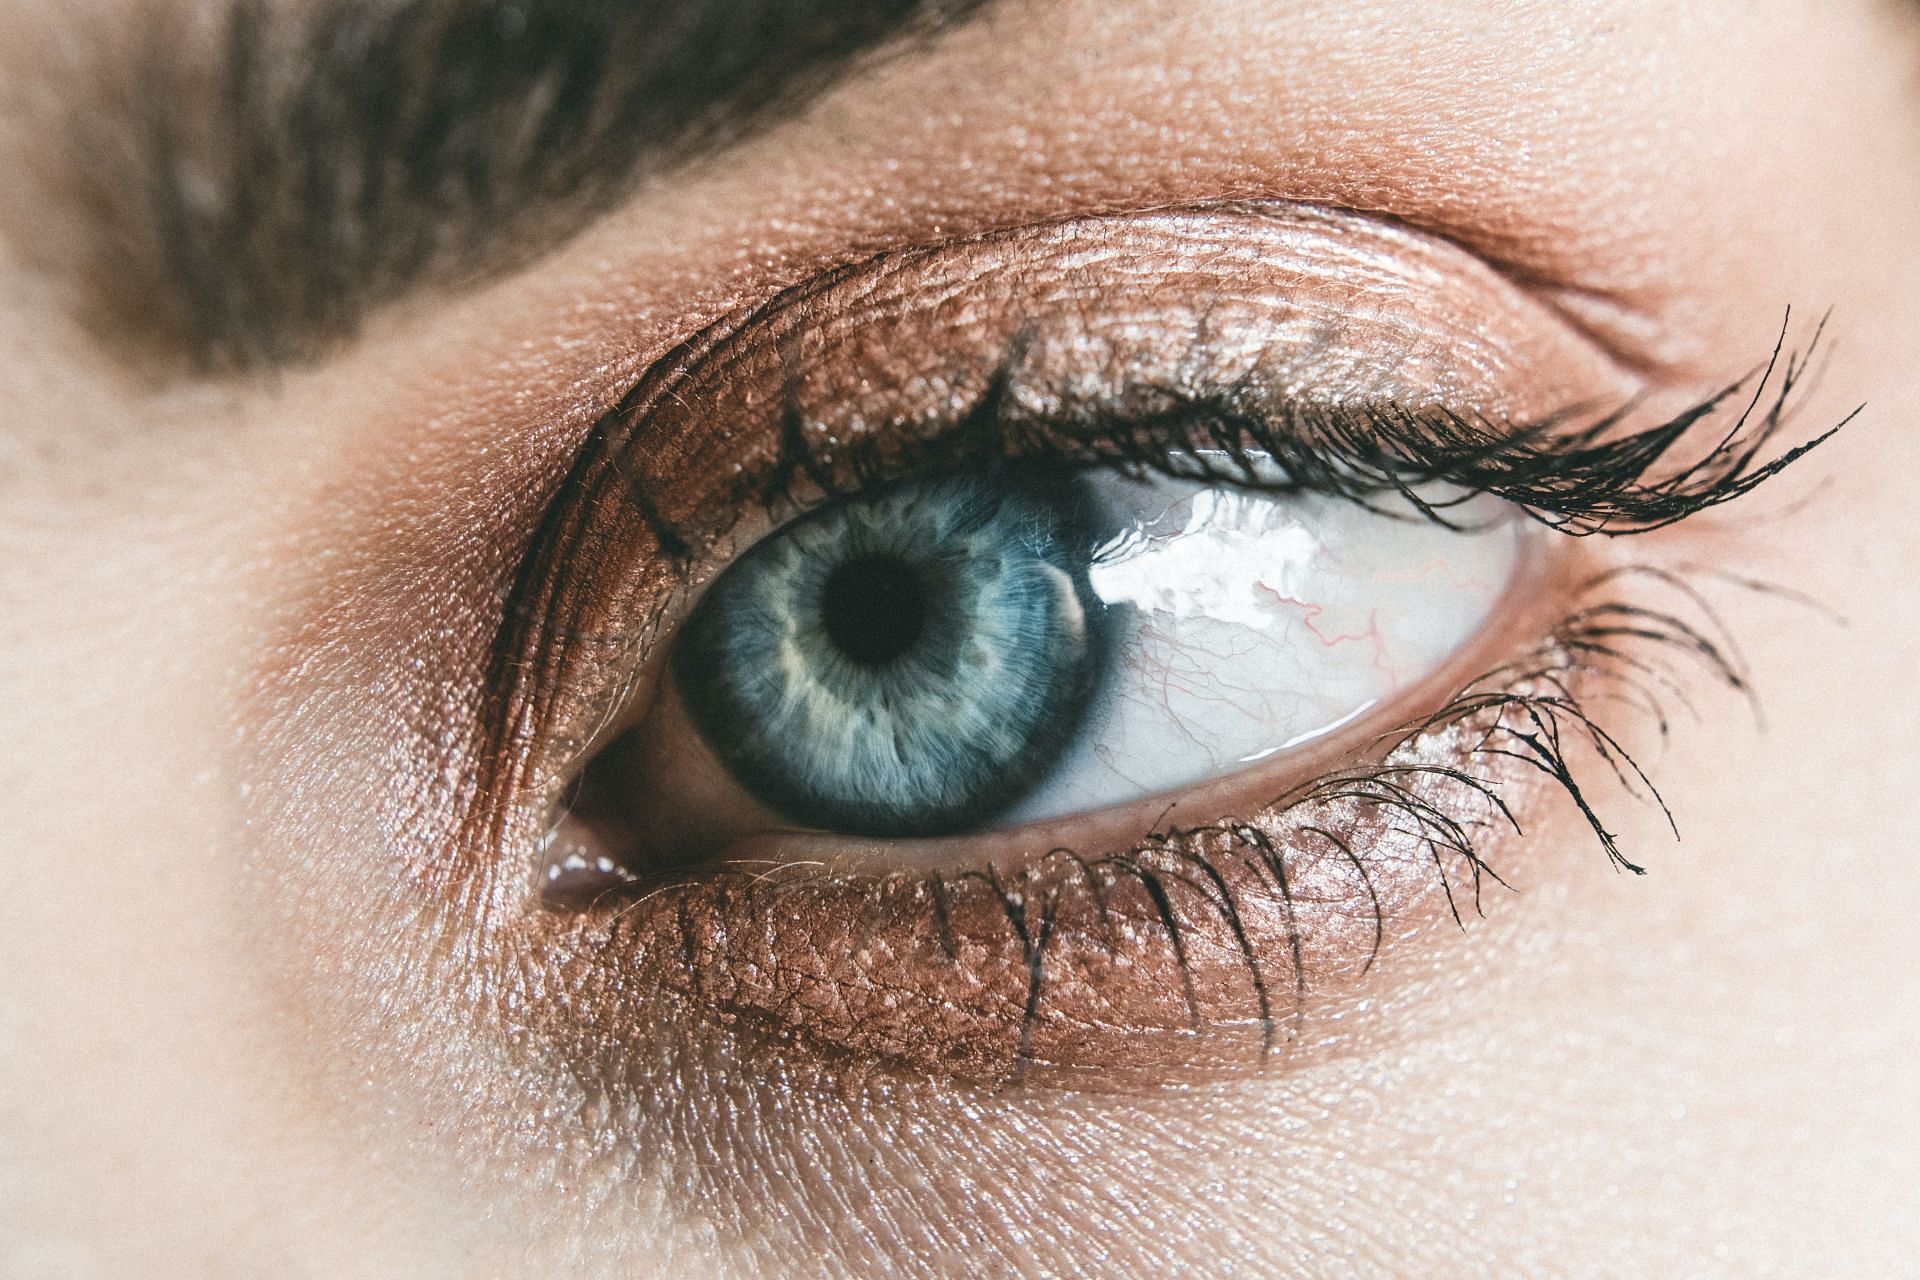 Castor oil for eyes: does it help? (Image via Pexels / Lisa Fotios)